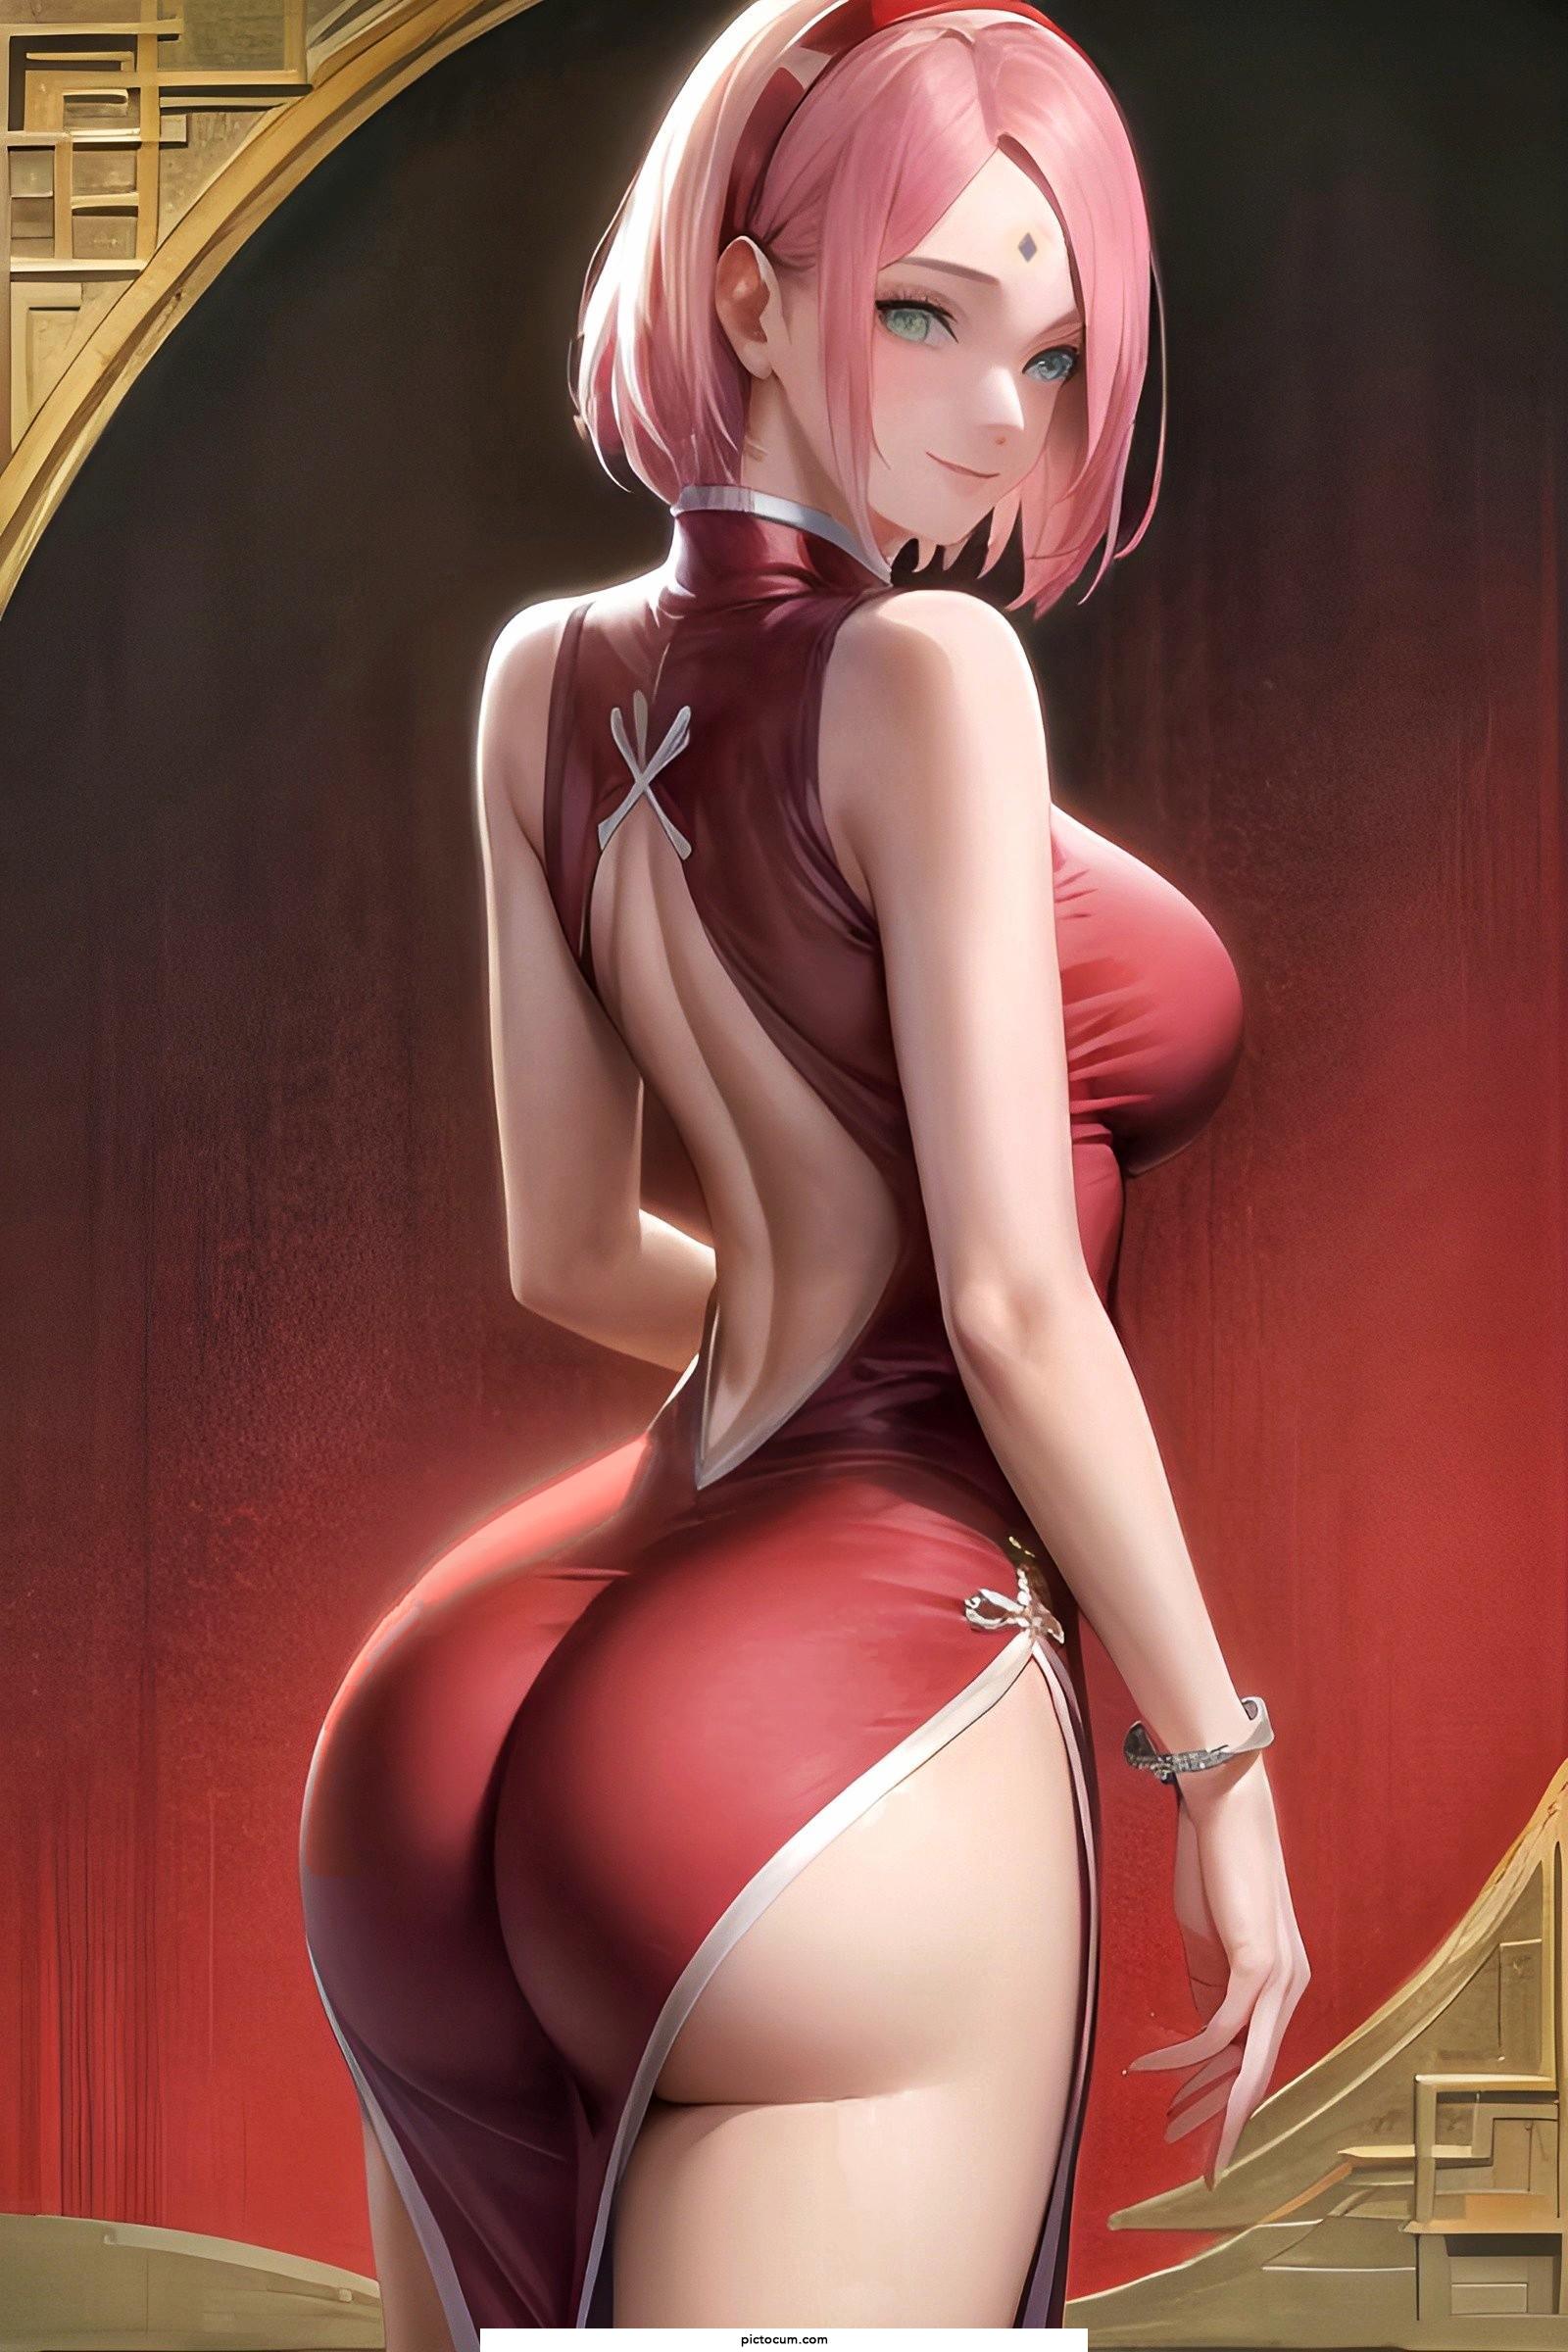 Sakura's thick Ass